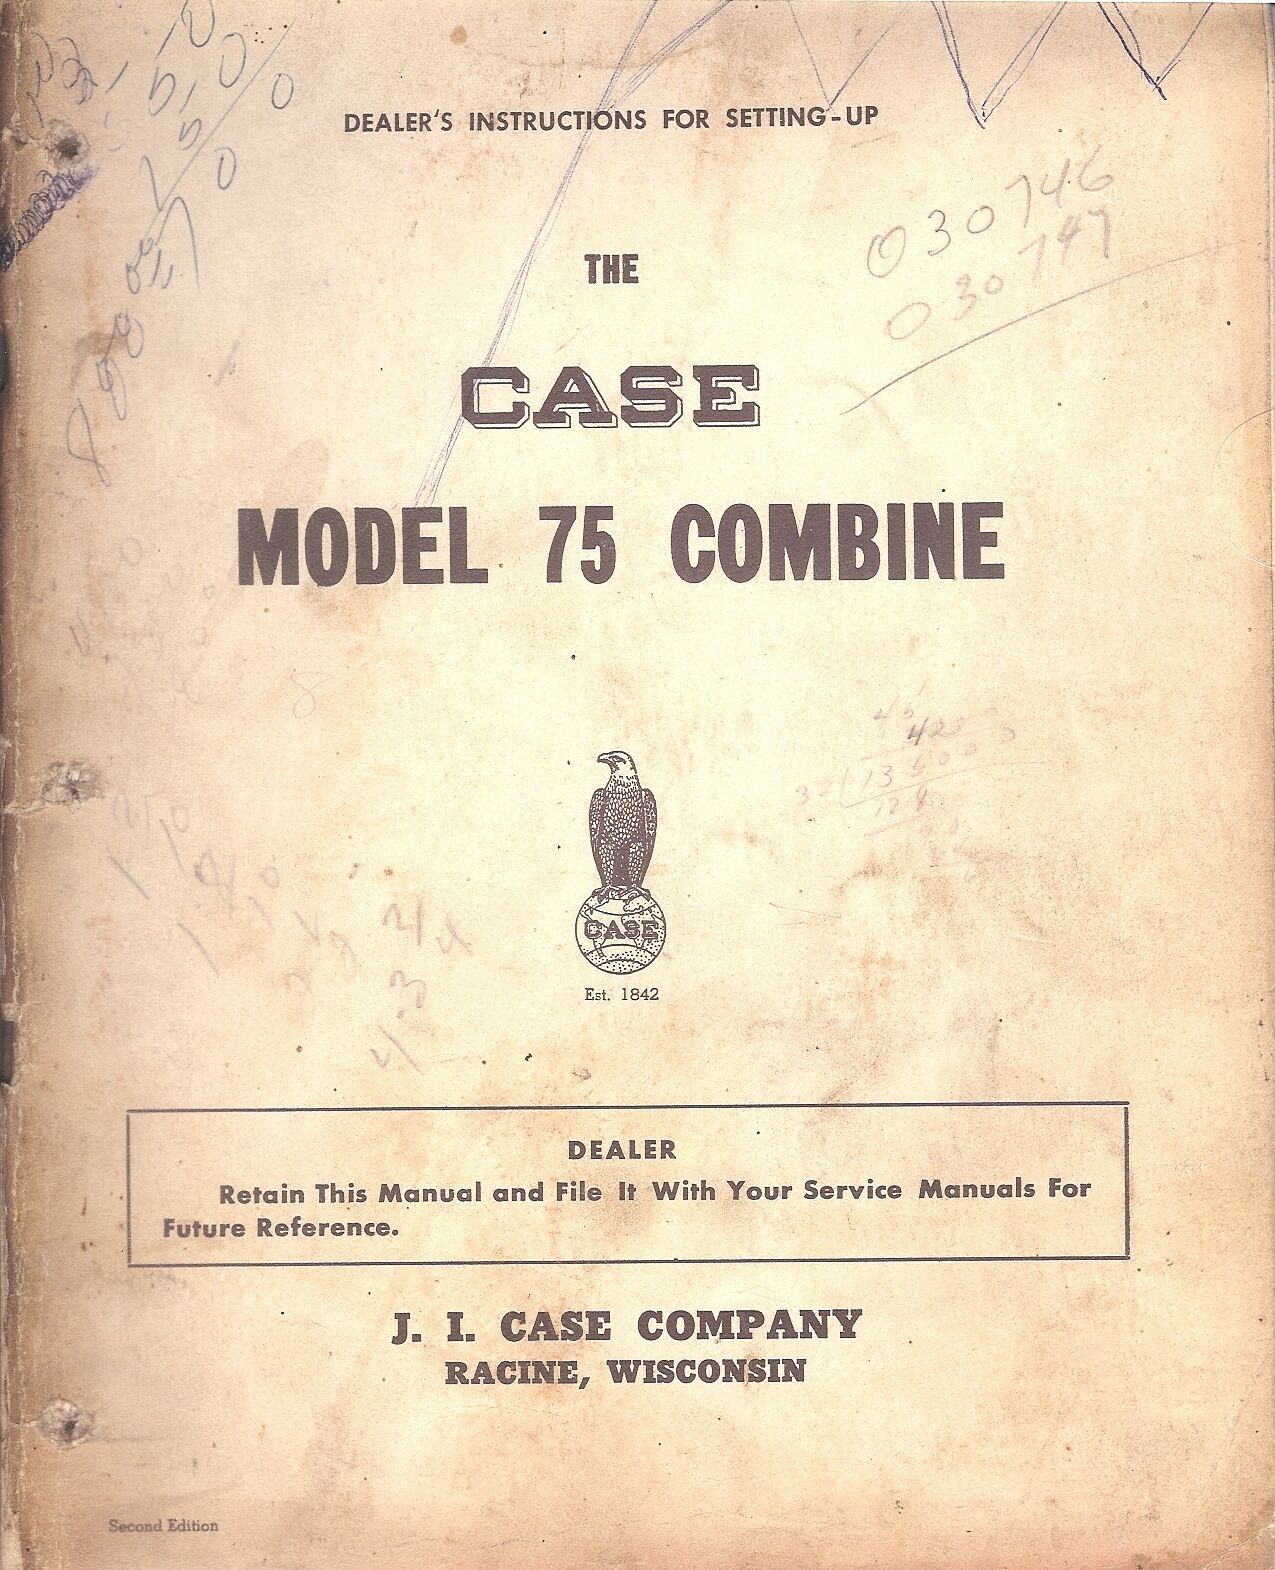 Farm Manual - Case - 75 - Combine - Dealer Set-Up Instructions c1950\'s (FM302)